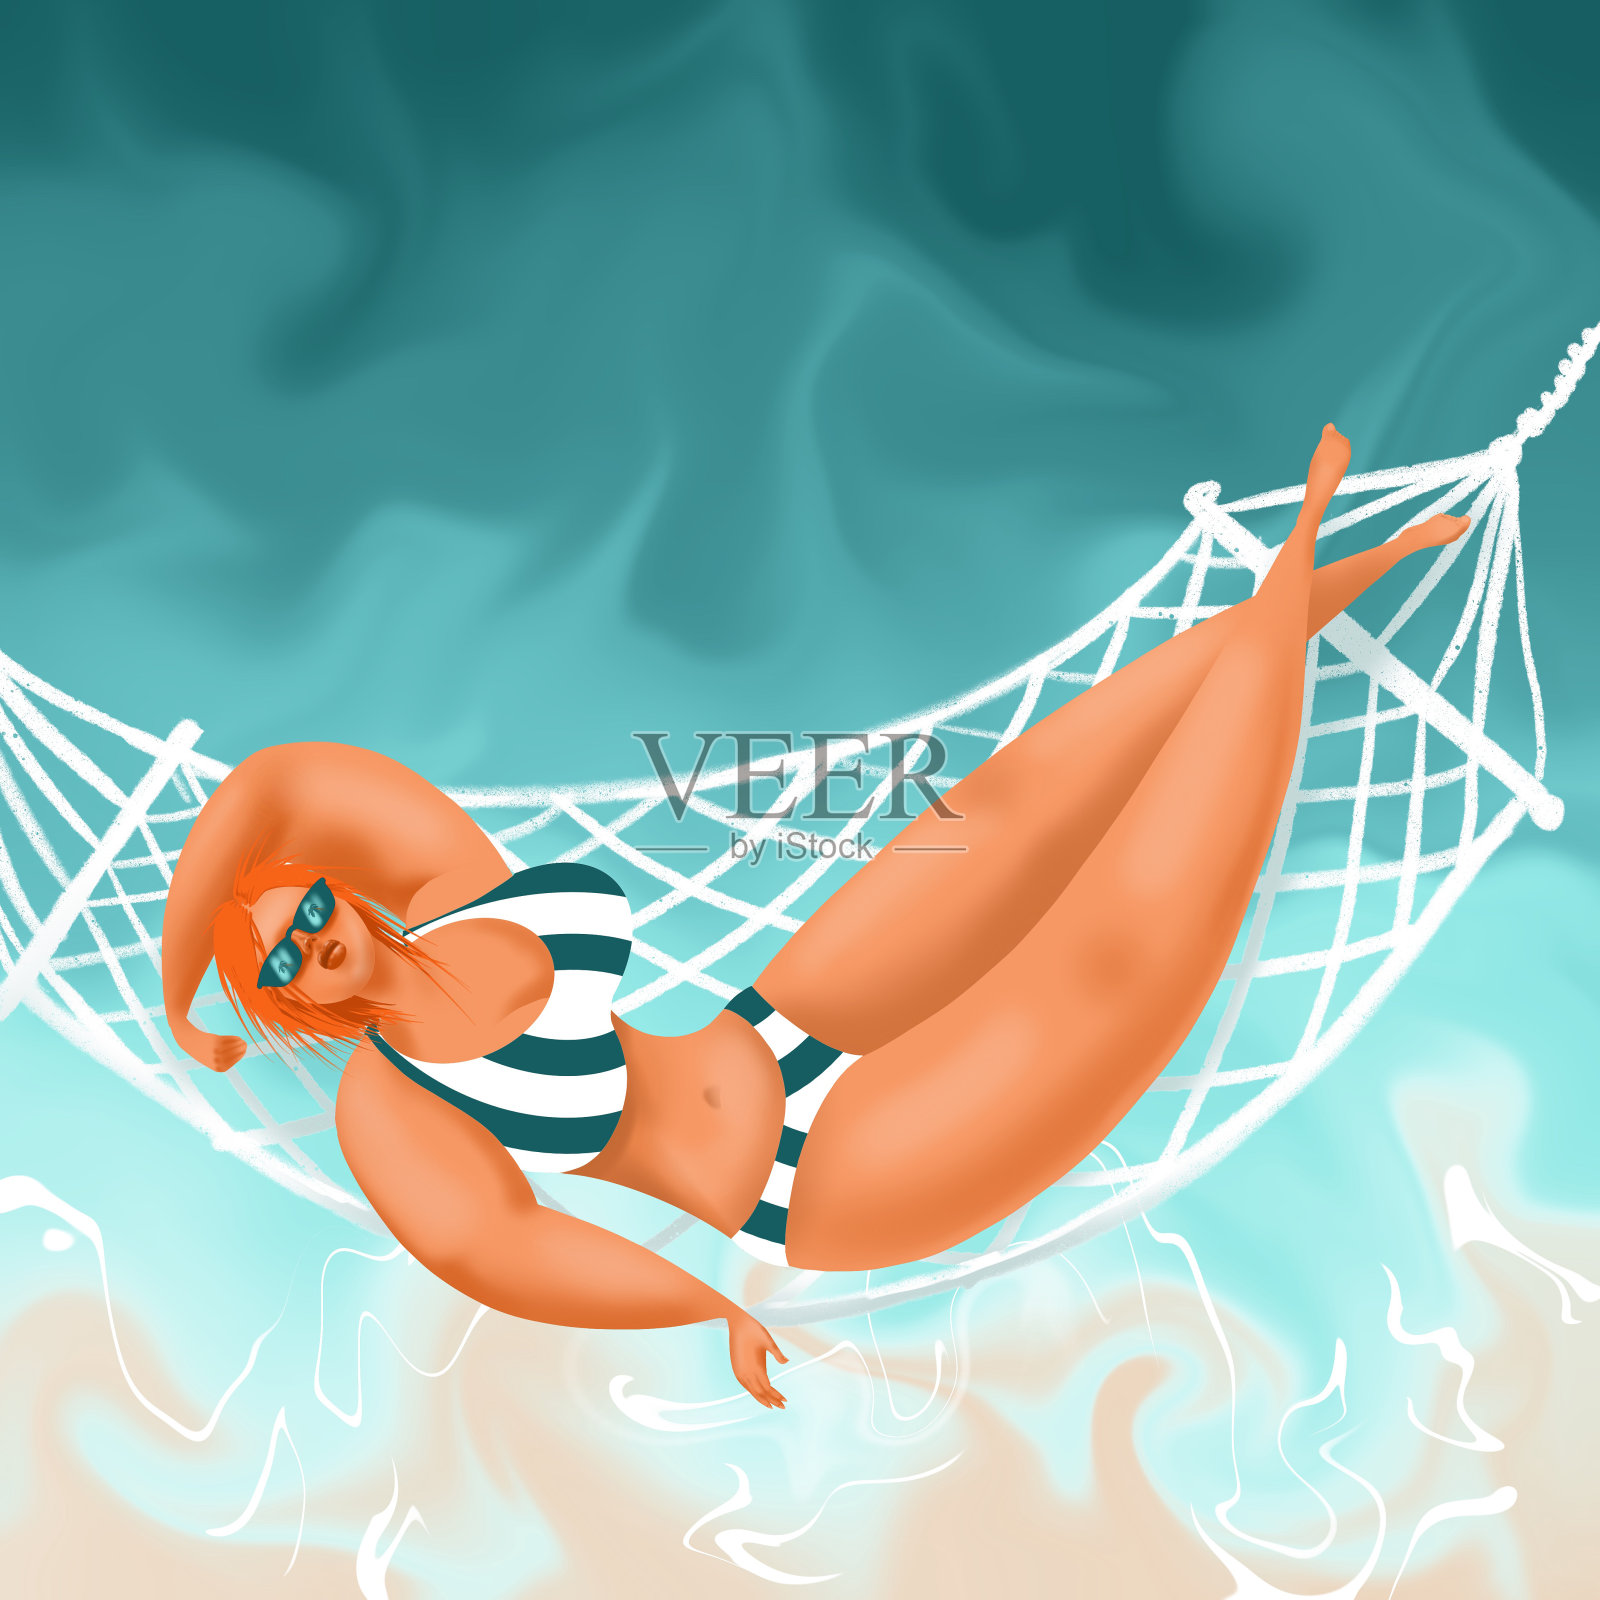 年轻迷人的女性卡通人物穿着比基尼日光浴在一个吊床上在蓝绿色的水的背景下俯瞰海滨。插画图片素材